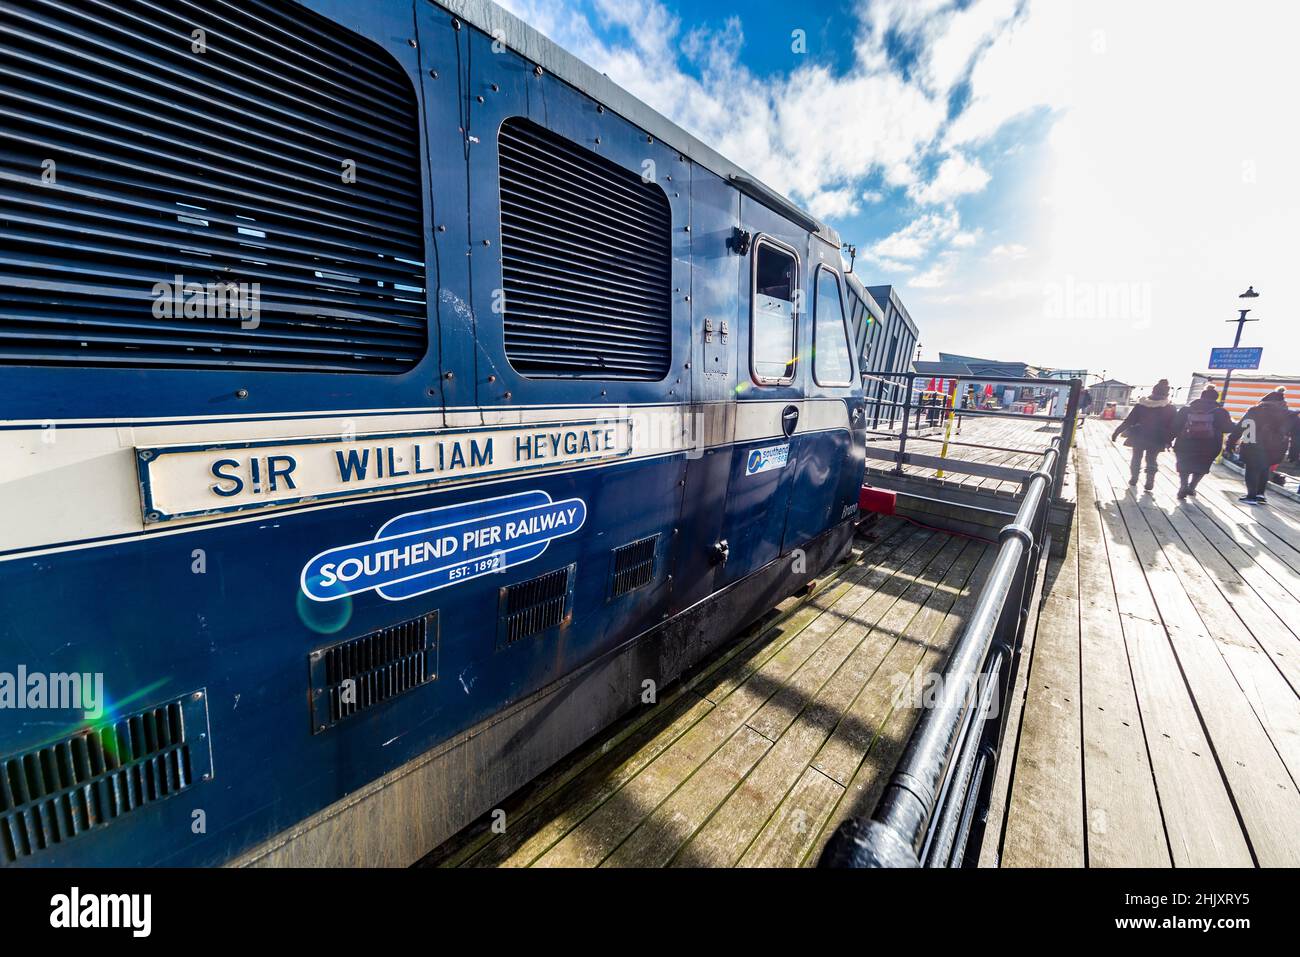 Southend Pier Railway Train Dieselkraftwagen am Southend Pier, Southend on Sea, Essex, benannt nach Sir William Heygate. Alter Zug. Menschen, die in die Sonne gehen Stockfoto